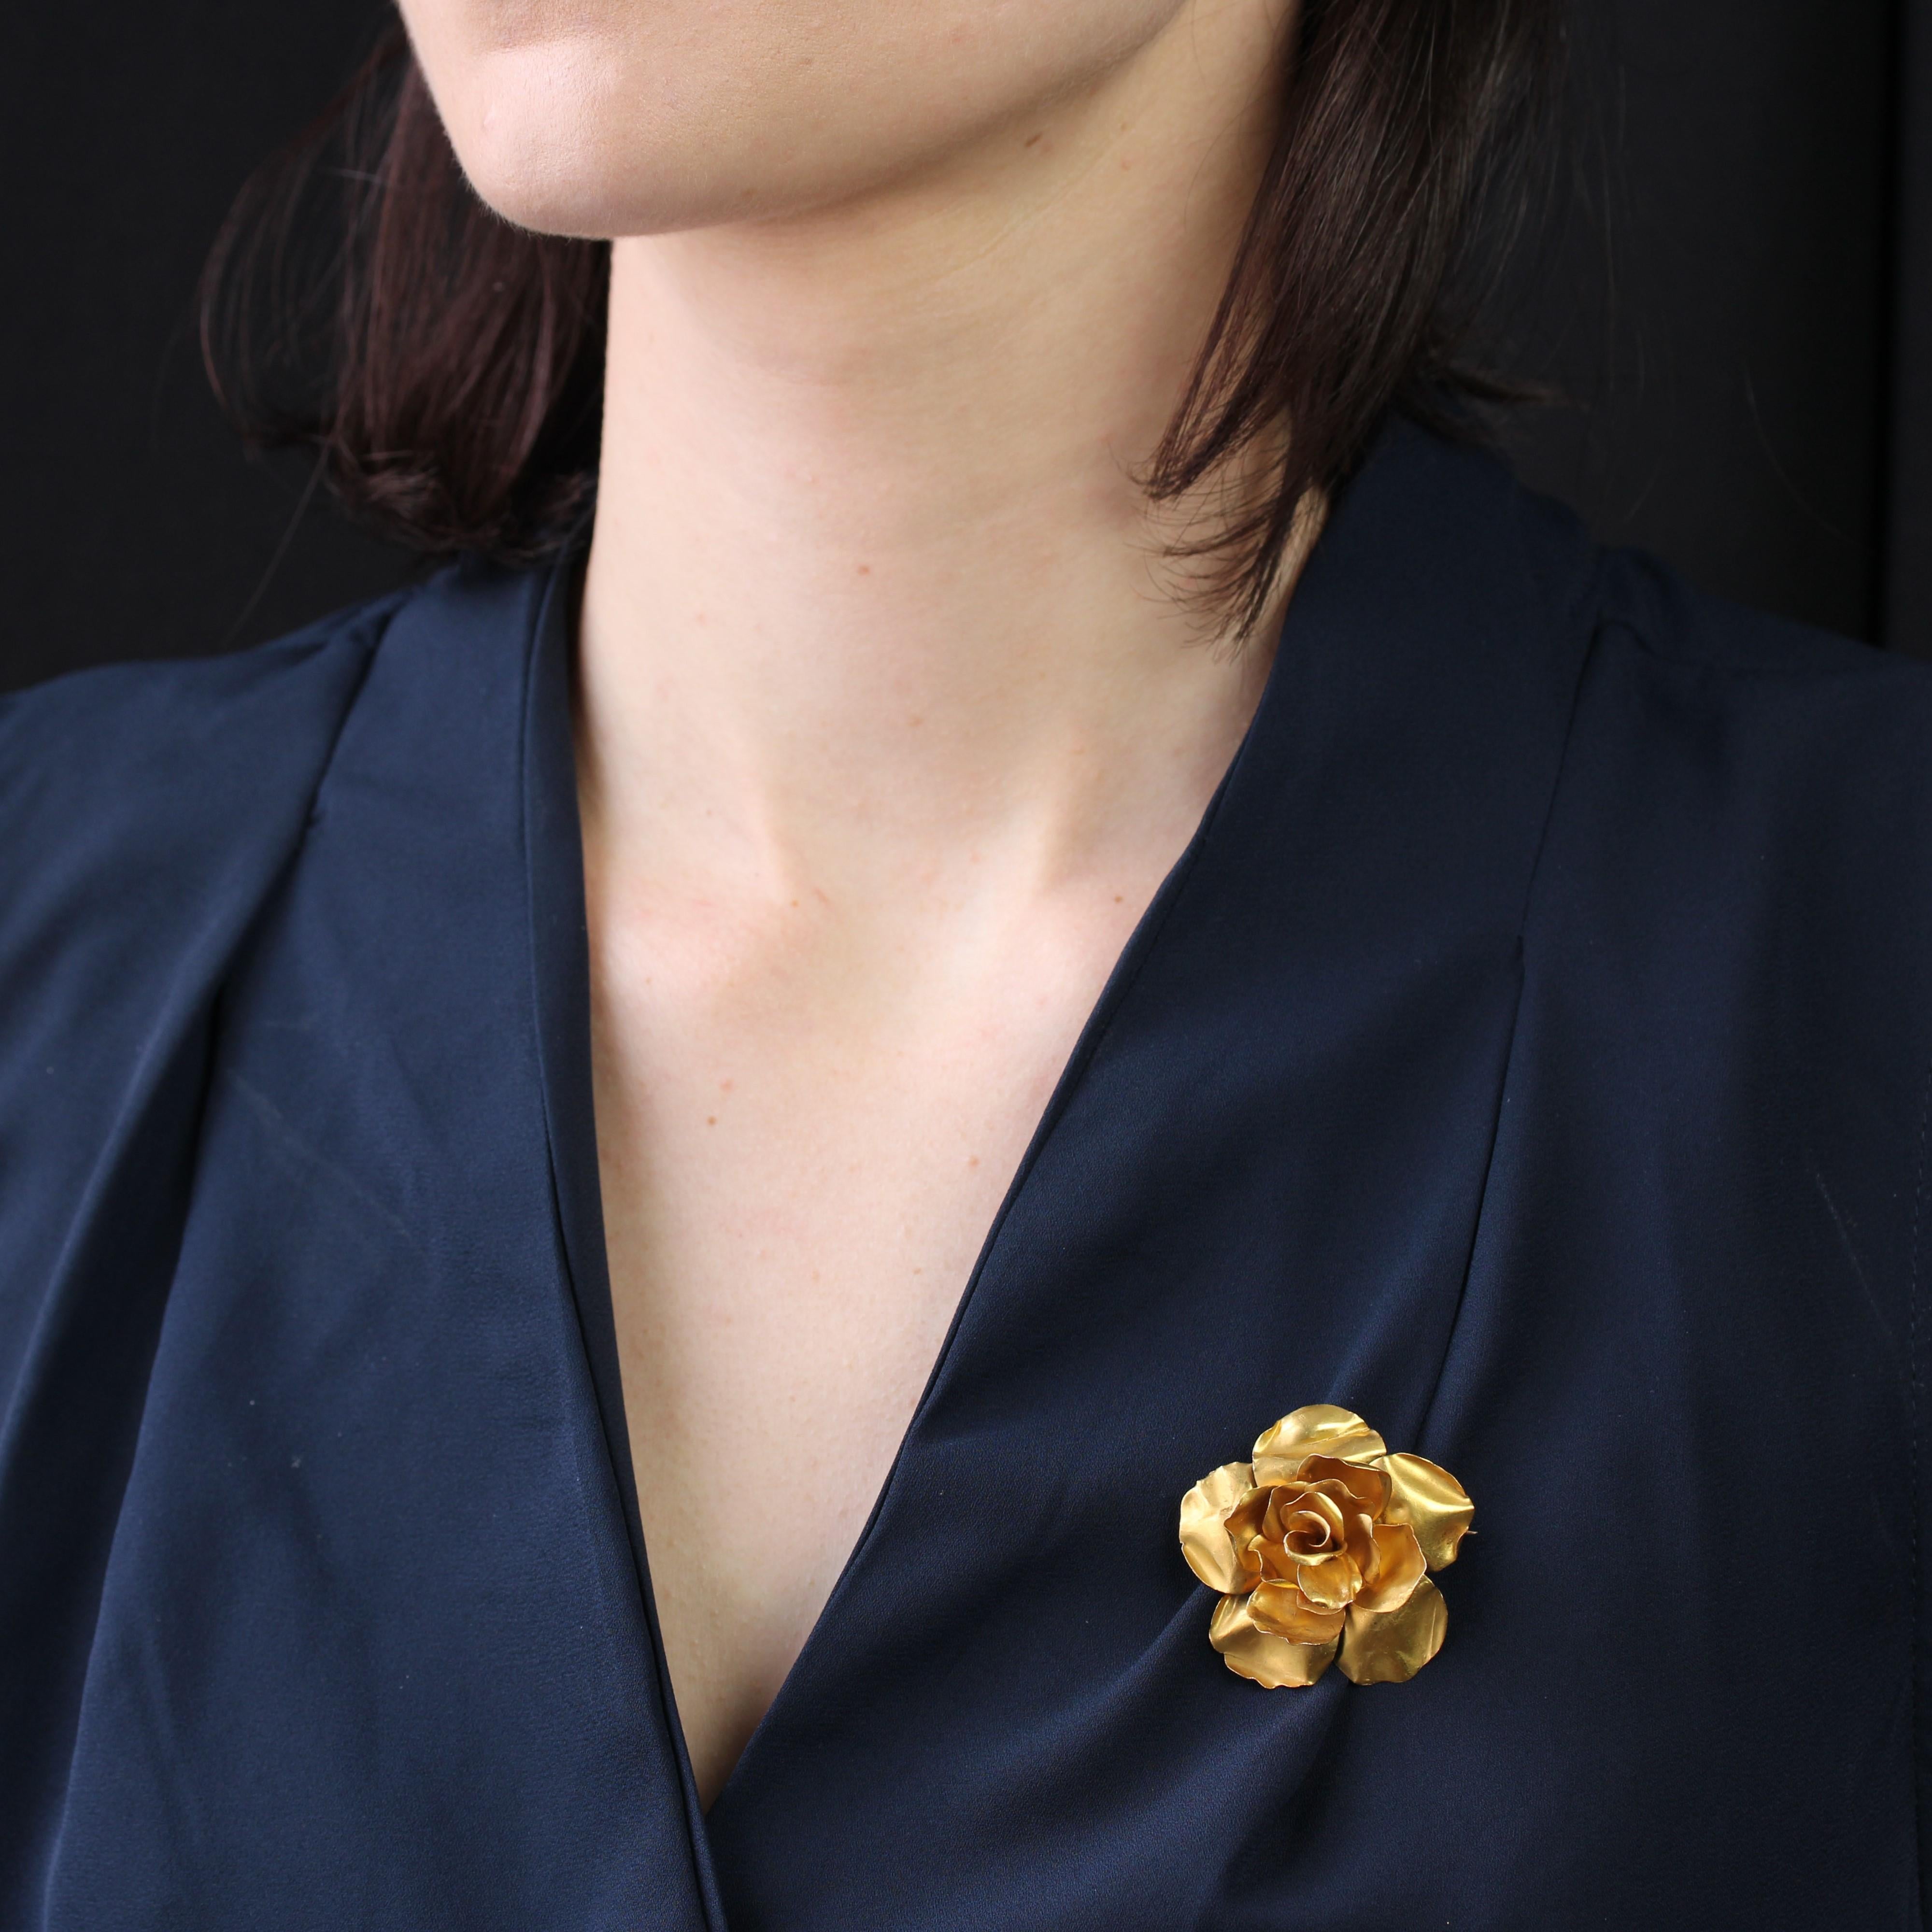 Brosche aus 18 Karat Gelbgold, Adlerkopfpunze.
Diese elegante Blumenbrosche zeigt eine blühende Rose, die aus kleinen, fließenden Goldplättchen geformt ist. Der Verschluss ist eine Nadel mit Sicherheitshaken.
Höhe: ca. 3,8 cm, Breite: ca. 3,8 cm,